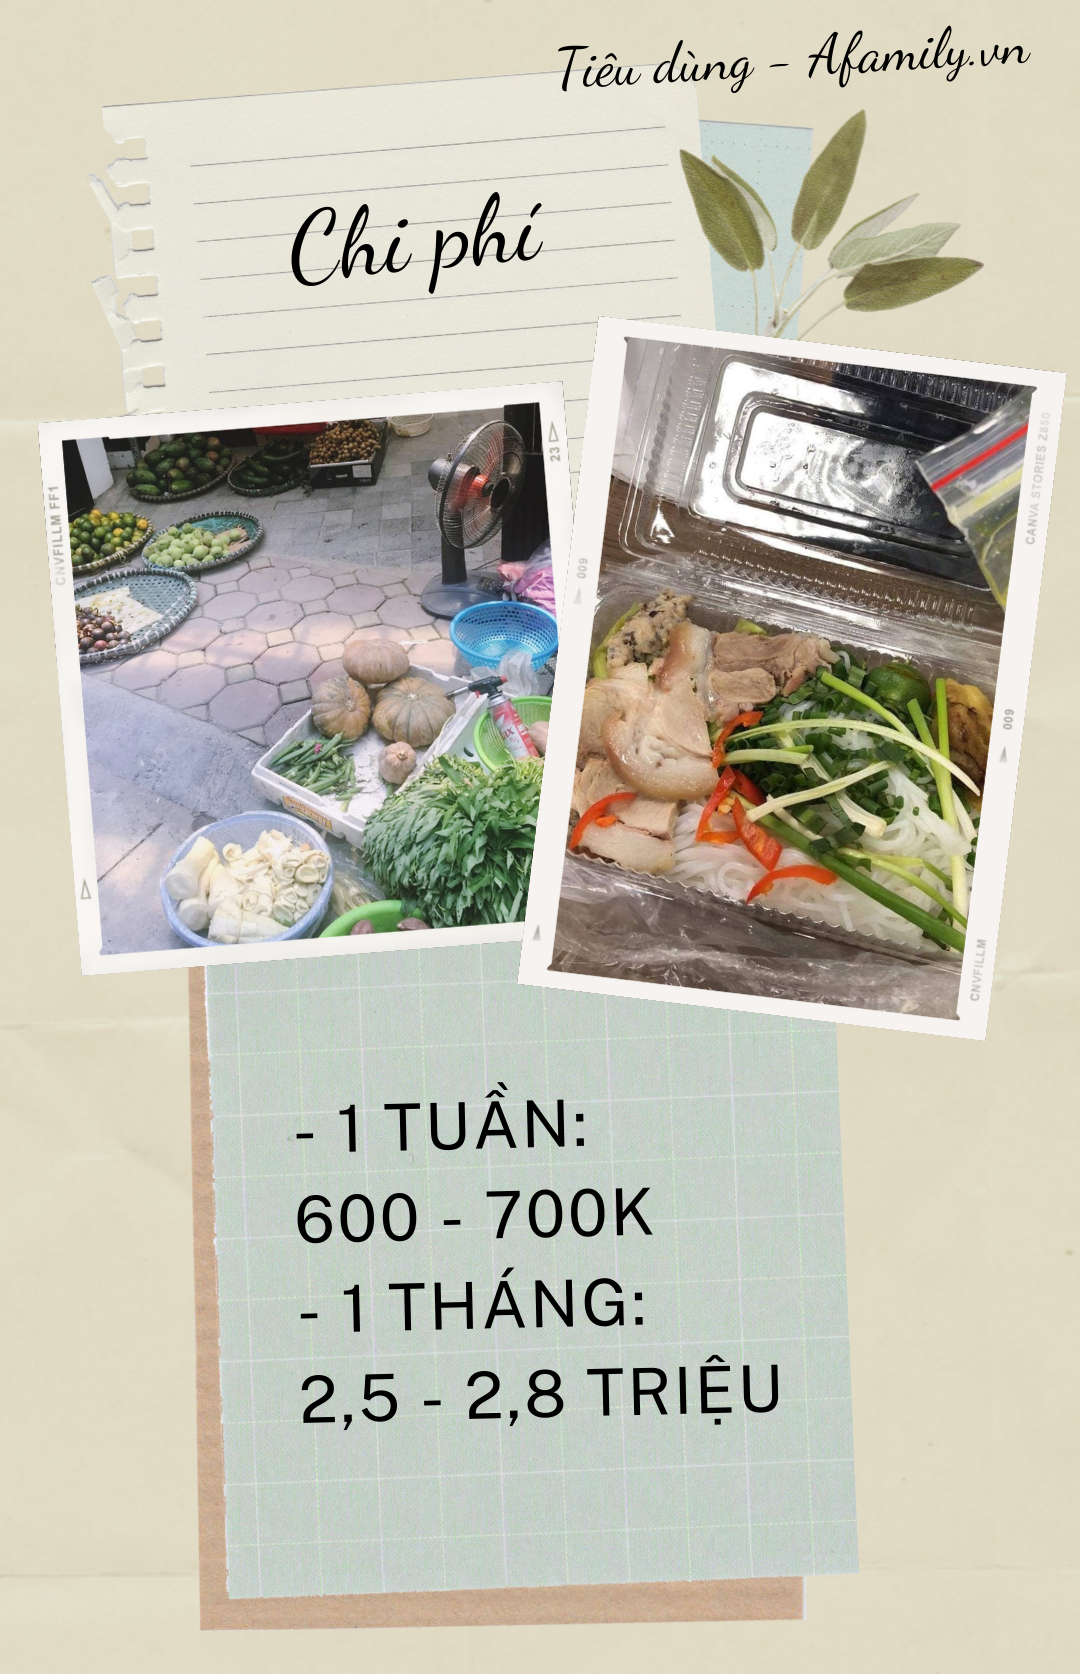 Mua chiếc tủ lạnh giá bình dân chưa tới 5 triệu, học cách đi chợ 1 lần/tuần giúp cô gái độc thân ở Hà Nội giảm được nửa tiền chi tiêu cho việc ăn uống - Ảnh 3.